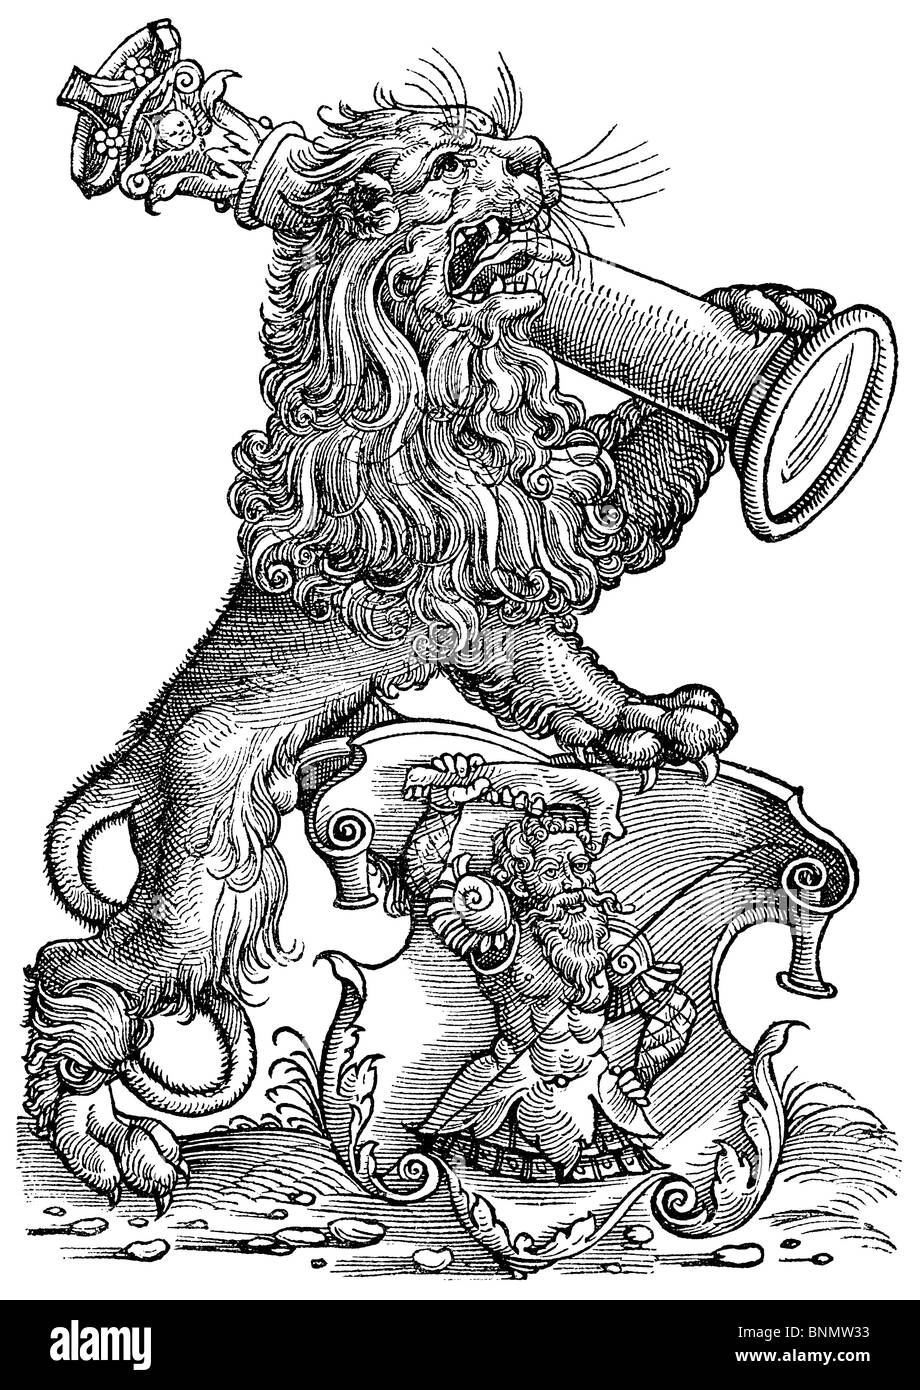 La marque de commerce de l'imprimante Strasbourg Myller en 1537 était un lion avec un pied sur un bouclier, l'autre tenant un pilier Banque D'Images